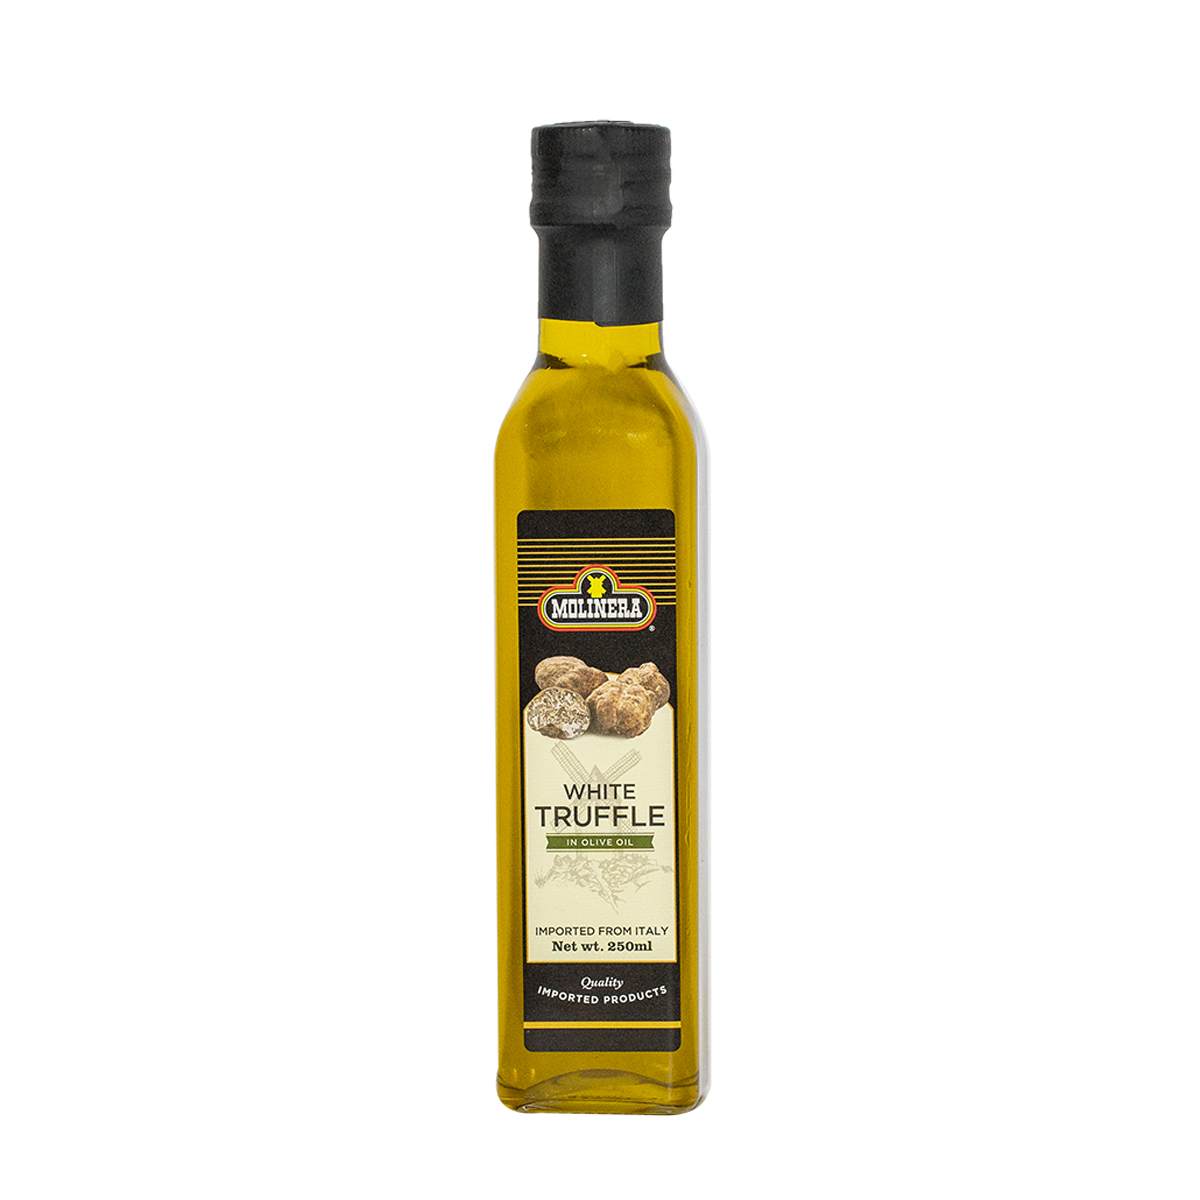 Molinera White Truffle Oil in Olive Oil